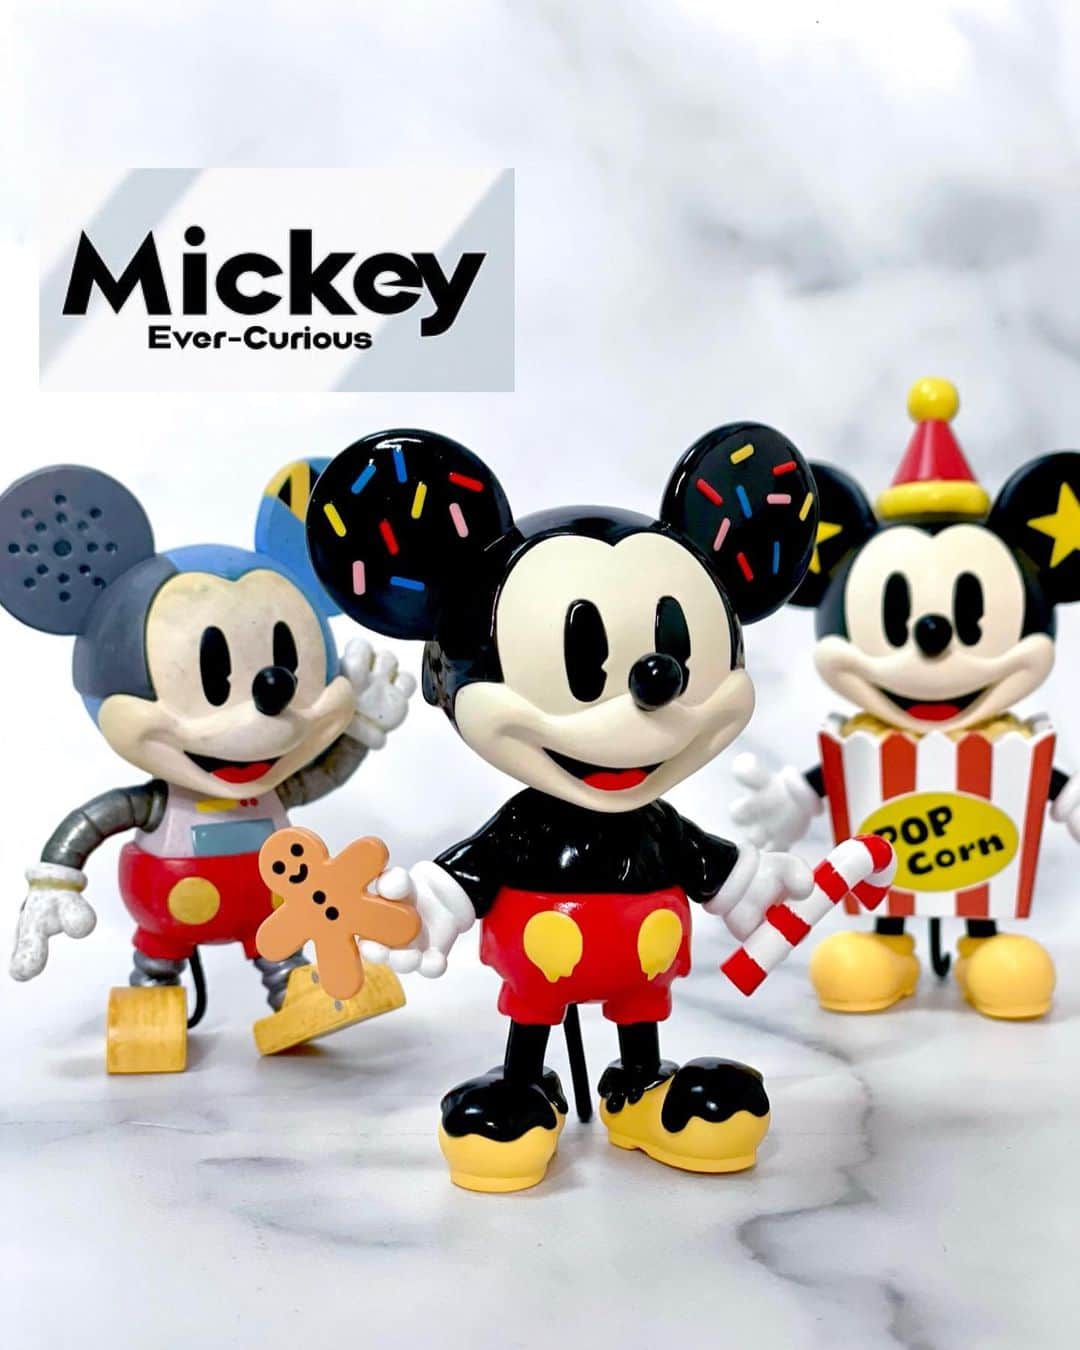 みかほのインスタグラム：「⁡ ⁡ SNSで話題のアートトイ 🤖 POP MART(ポップマート)とDISNEYのコラボ‎🤍 ⁡ @popmartjp  ⁡ ギャンかわすぎるーーー！！！💗💗💗 ⁡ 【DISNEY 100th Anniversary Mickey Ever-Curious シリーズ】  好奇心に国境はない、 ミッキーのアートの世界を探る！ ディズニー100周年を記念して、 ミッキーと一緒に新たな冒険に出かけよう🌈   ノーマル12種＋シークレット1種   中身がわからないブラインドボックス仕様 なので、どのデザインが届くかわくわく！💗 ⁡ ついつい可愛くて集めたくなっちゃう🥺‎🤍 つくりもしっかりしてて 完全に大人がコレクションしたくなるフィギュア✨️  PR @popmartjp  #popmart #ポップマート #ディズニーコラボ ⁡ 𑁍𓏸𓈒𓂃𓂃𓂃𓂃𓂃𓂃𓂃𓂃𓂃𓂃𓈒𓏸𑁍‬ ⁡ 最後まで読んでいただき ありがとうございました🤍 ⁡ このアカウントでは 美容やコスメ情報を中心に 日常でいいな♡と思ったものを 発信しております🕊 ⁡ いいね‪‪❤︎‬コメント‪‪❤︎‬シェア‪‪❤︎‬保存⸜❤︎⸝‍ フォローの全て励みになります- ̗̀ ♡ ̖́- よろしくお願いします 🐰 ⁡ @mikahogram  byみかほ ⁡ 𑁍𓏸𓈒𓂃𓂃𓂃𓂃𓂃𓂃𓂃𓂃𓂃𓂃 𓈒𓏸𑁍‬  #フィギュアコレクション  #ディズニーグッズ  #ミッキーグッズ  #ミッキーコラボ  #フィギュア好き」